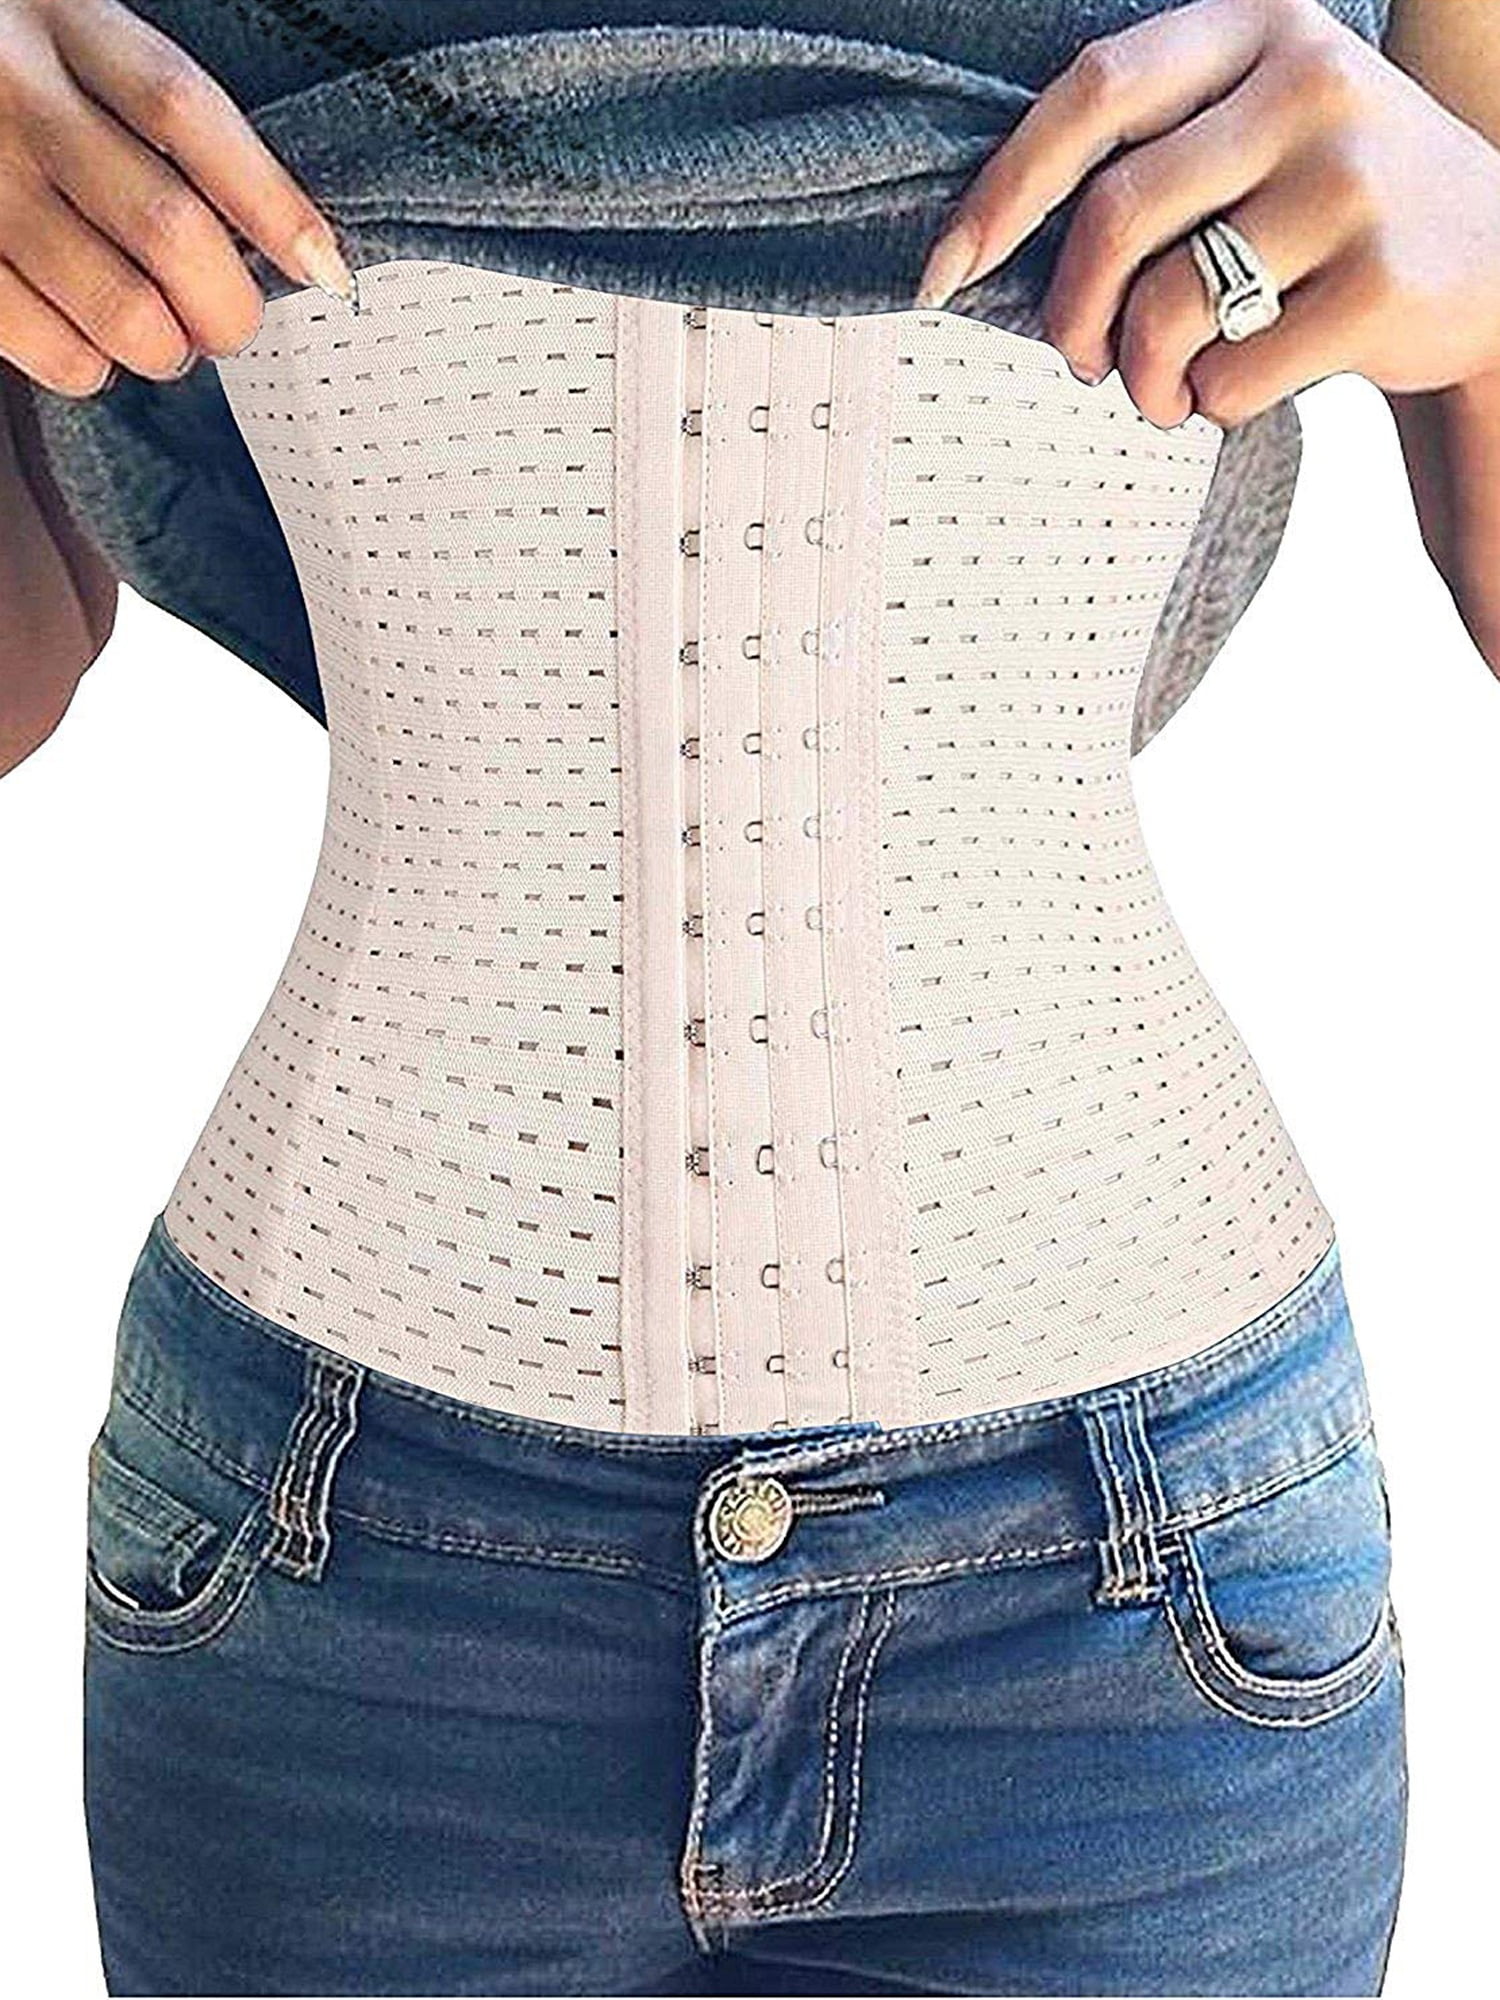 Mujeres Shapewear Control de la abdomen Body Shaper Shaper Comfort Abierto Busto Slimmer 